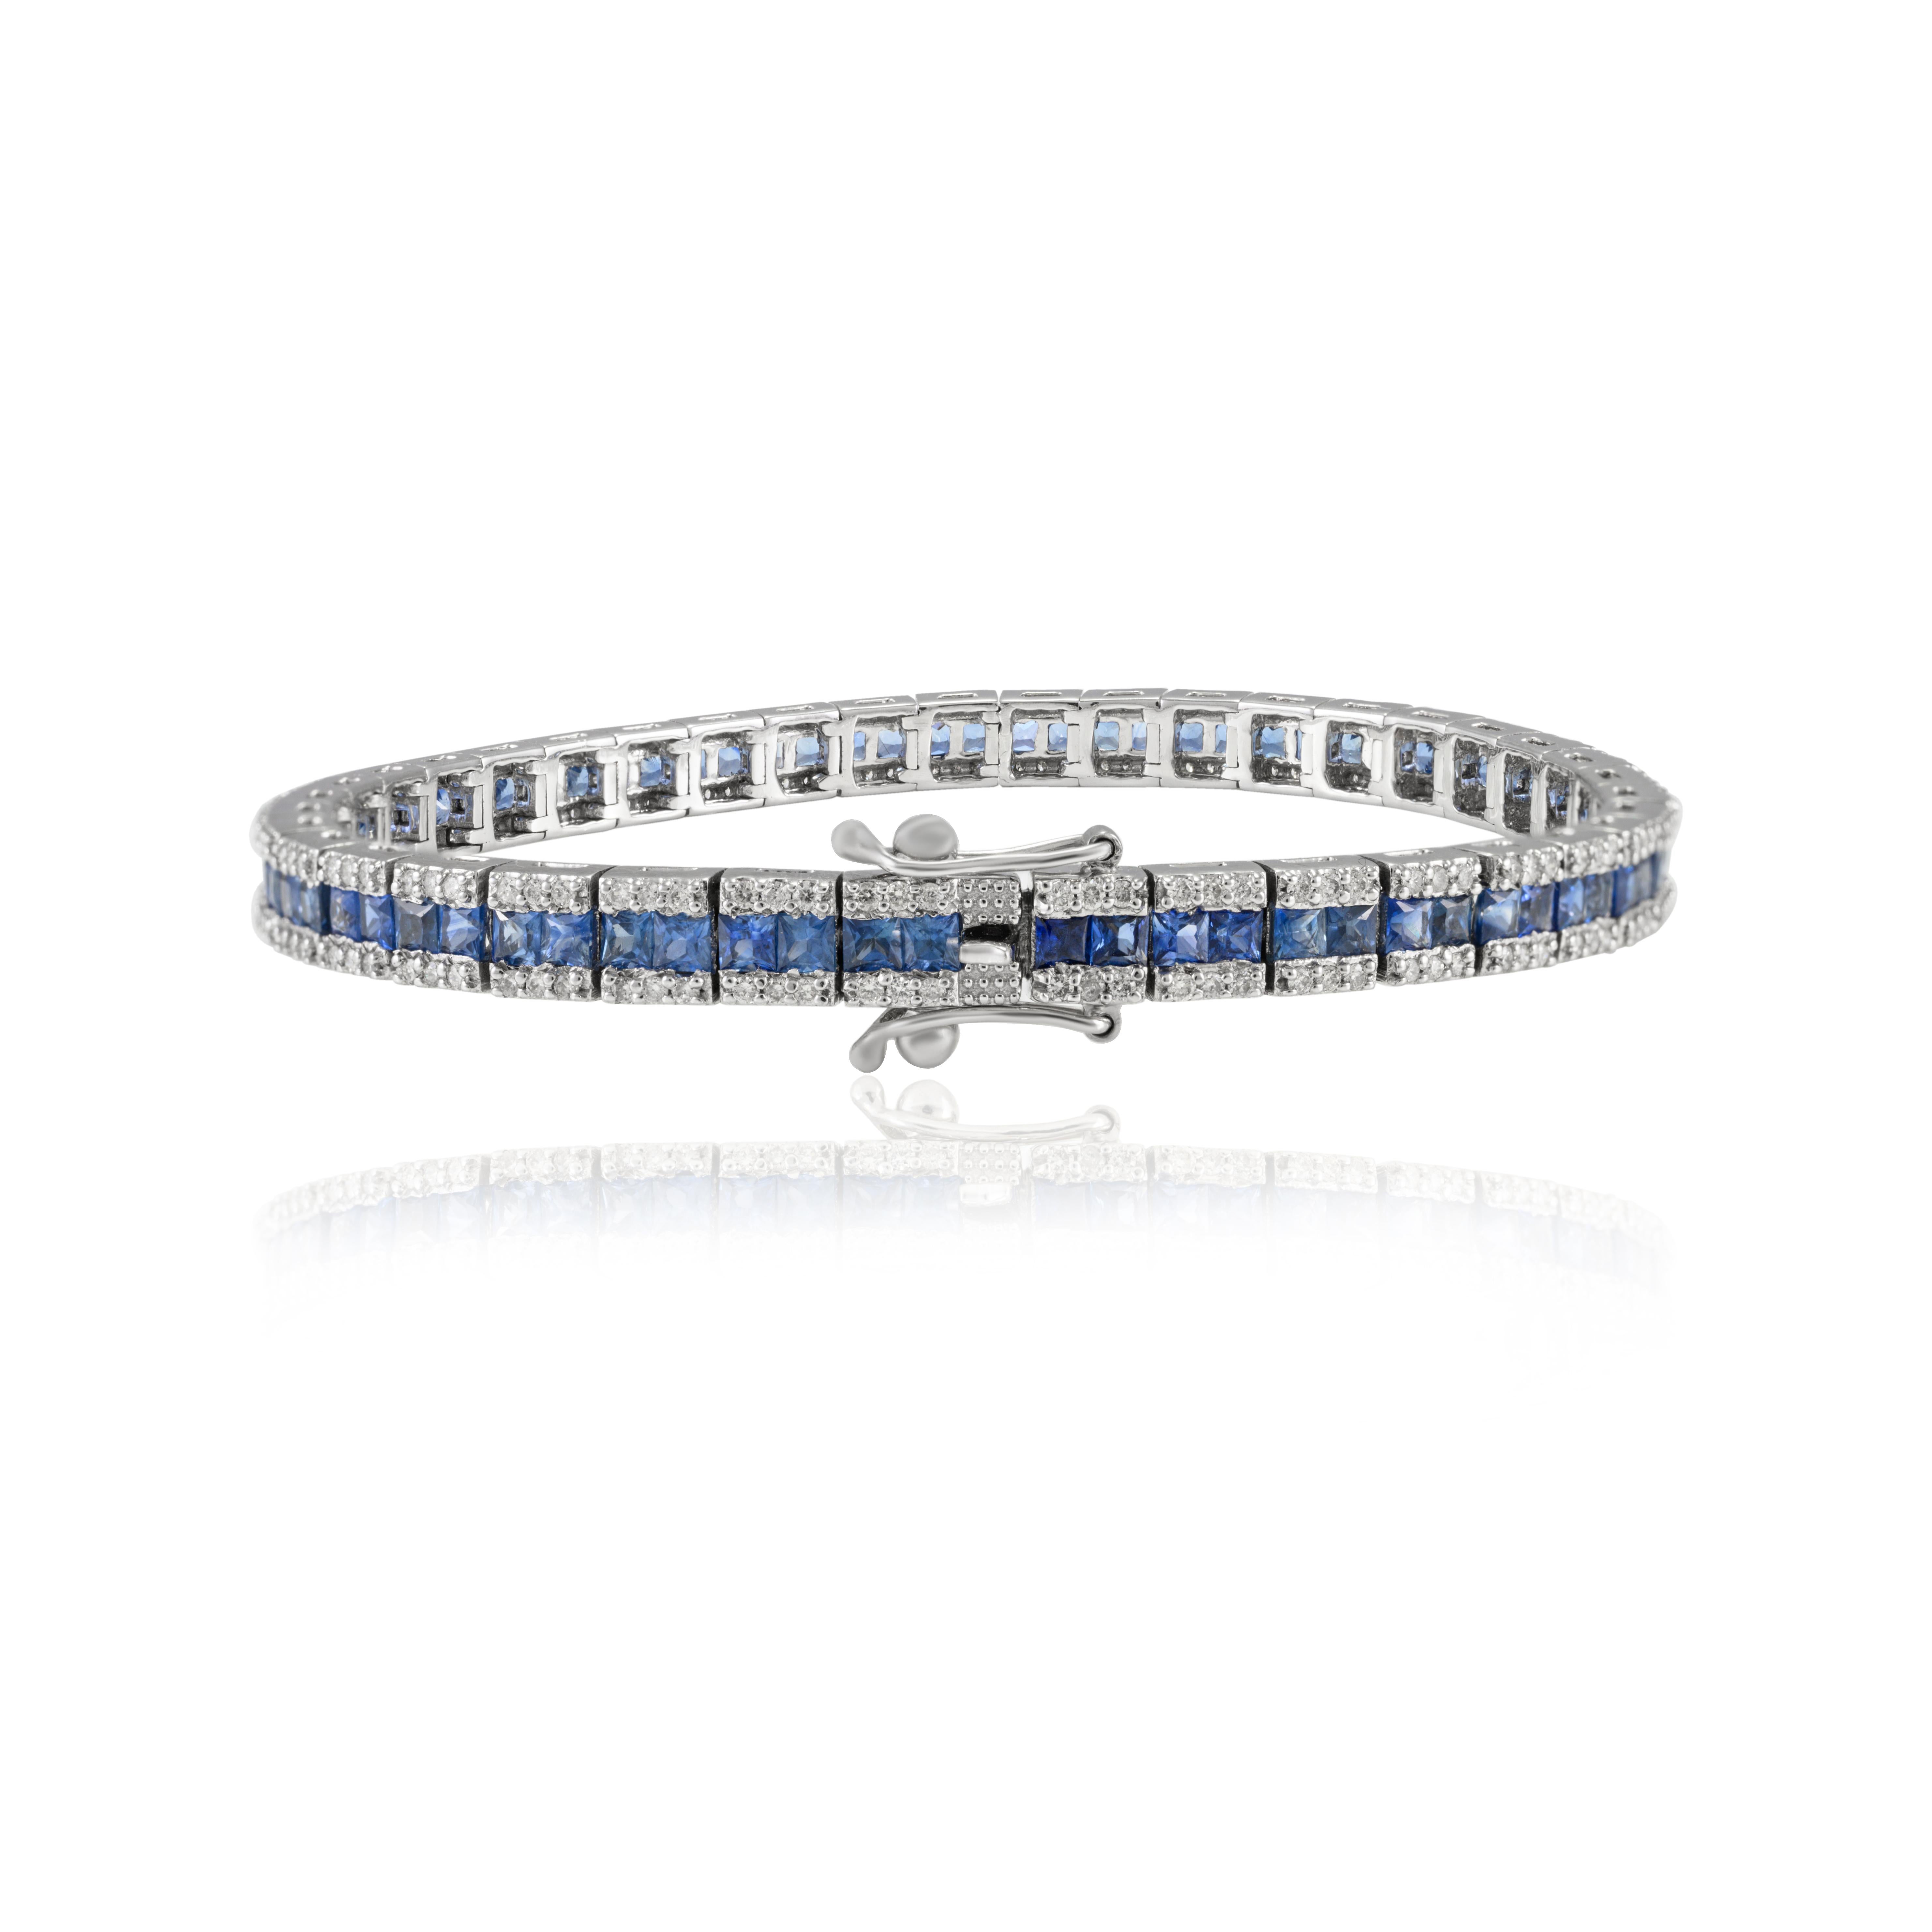 Ce bracelet de tennis en or 18 carats, saphir bleu taillé à la française et diamant, met en valeur le saphir bleu naturel et les diamants qui scintillent à l'infini. Il mesure 7 pouces de long. 
Le saphir stimule la concentration et réduit le